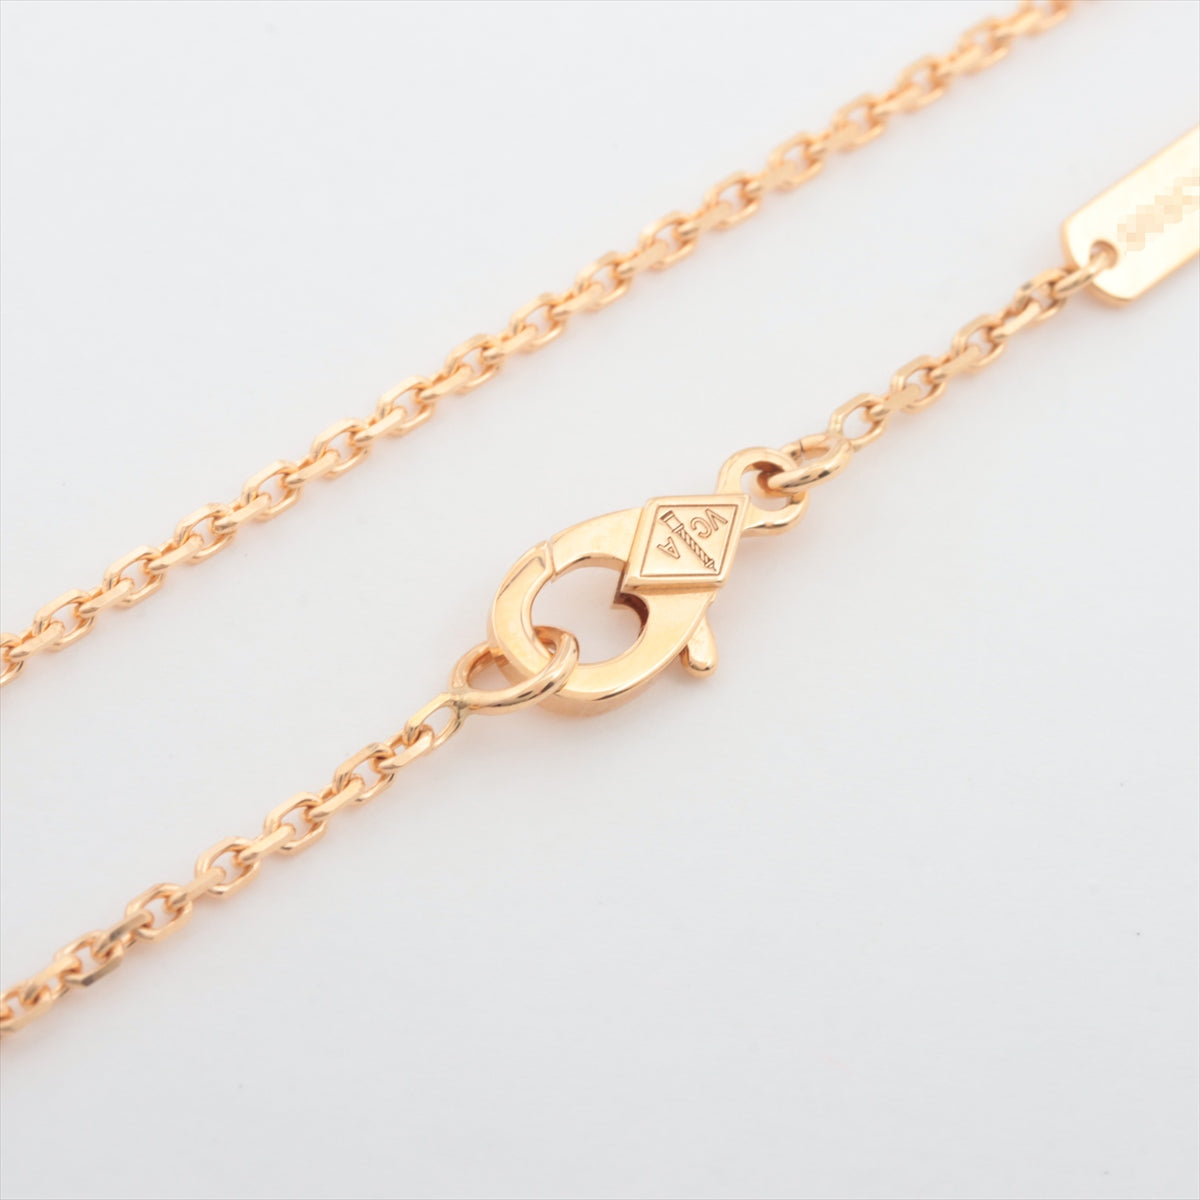 Van Cleef & Arpels Vintage Alhambra Golden S Diamond Necklace 750 (YG) 6.5g VCARP2R700 2018 Limited